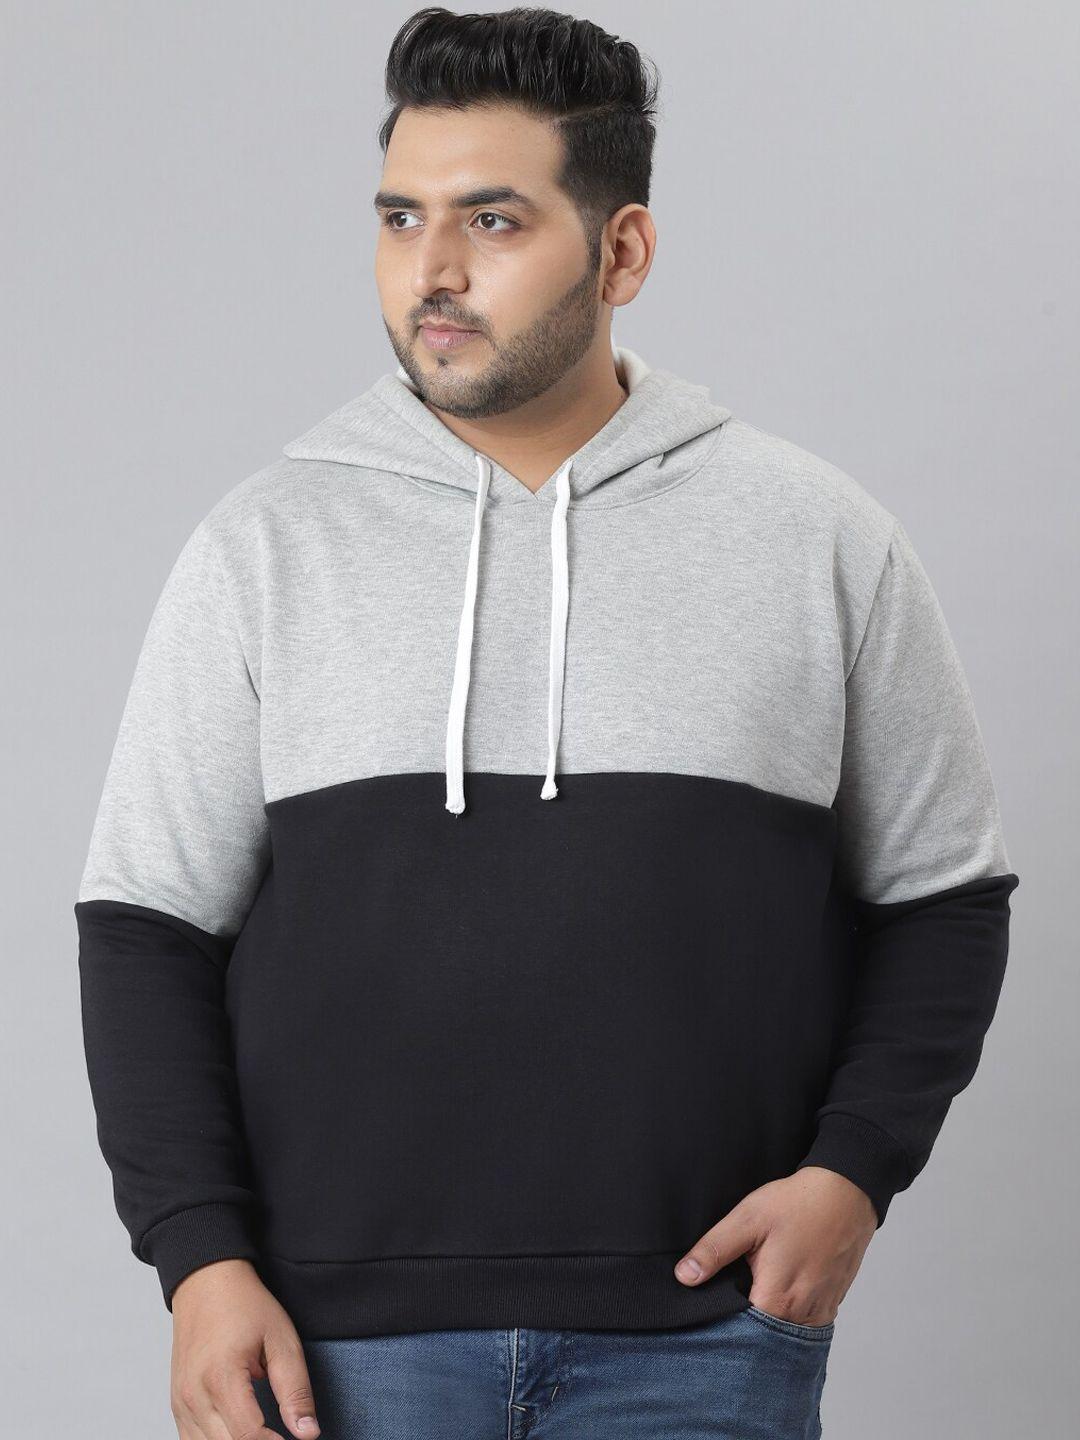 instafab-plus-men-black-colourblocked-hooded-sweatshirt